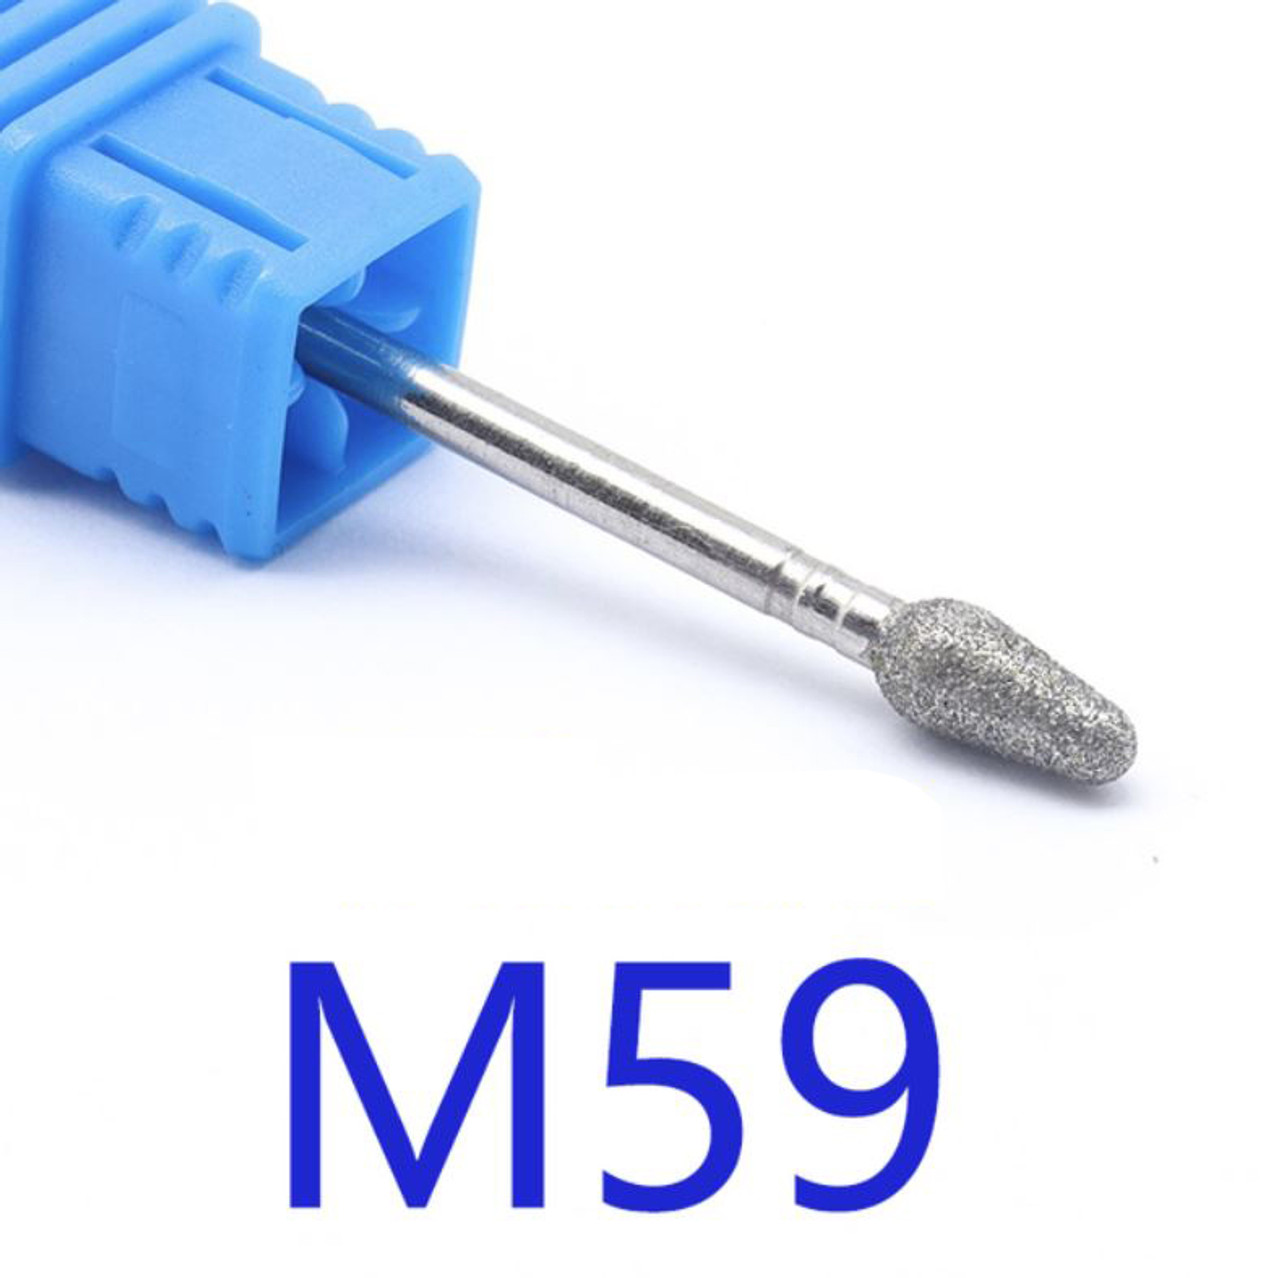 NDi beauty Diamond Drill Bit - 3/32 shank (MEDIUM) - M59